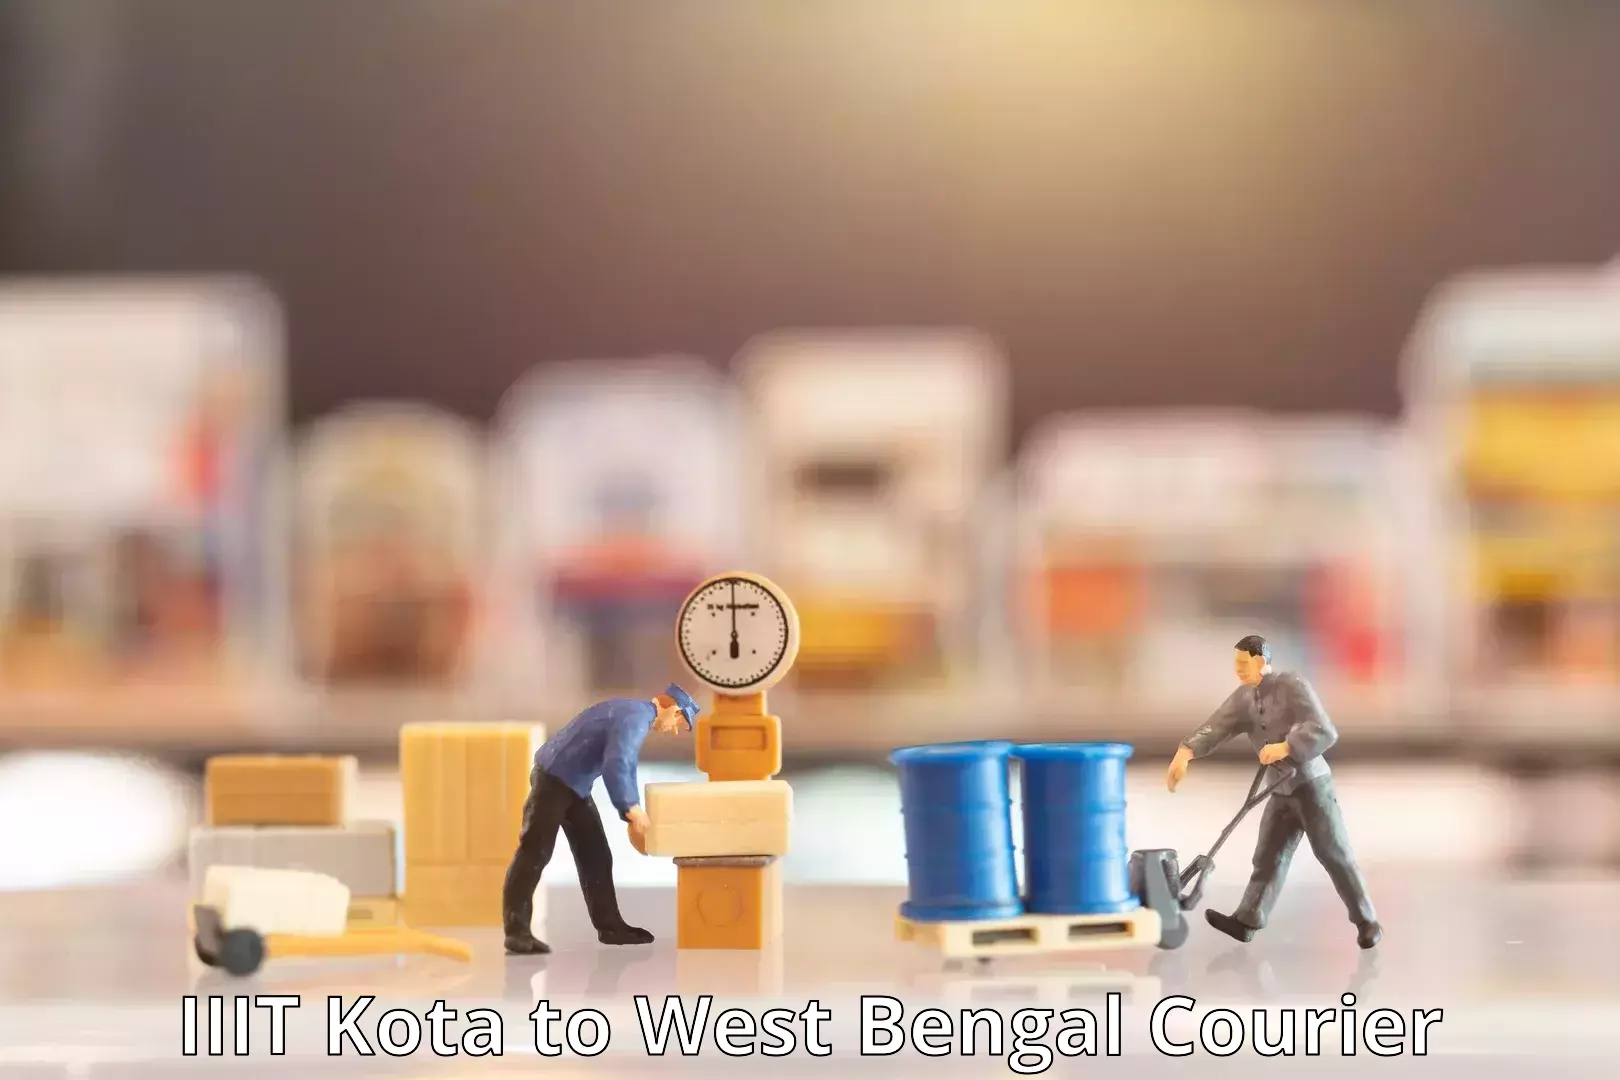 Cost-effective courier options IIIT Kota to West Bengal